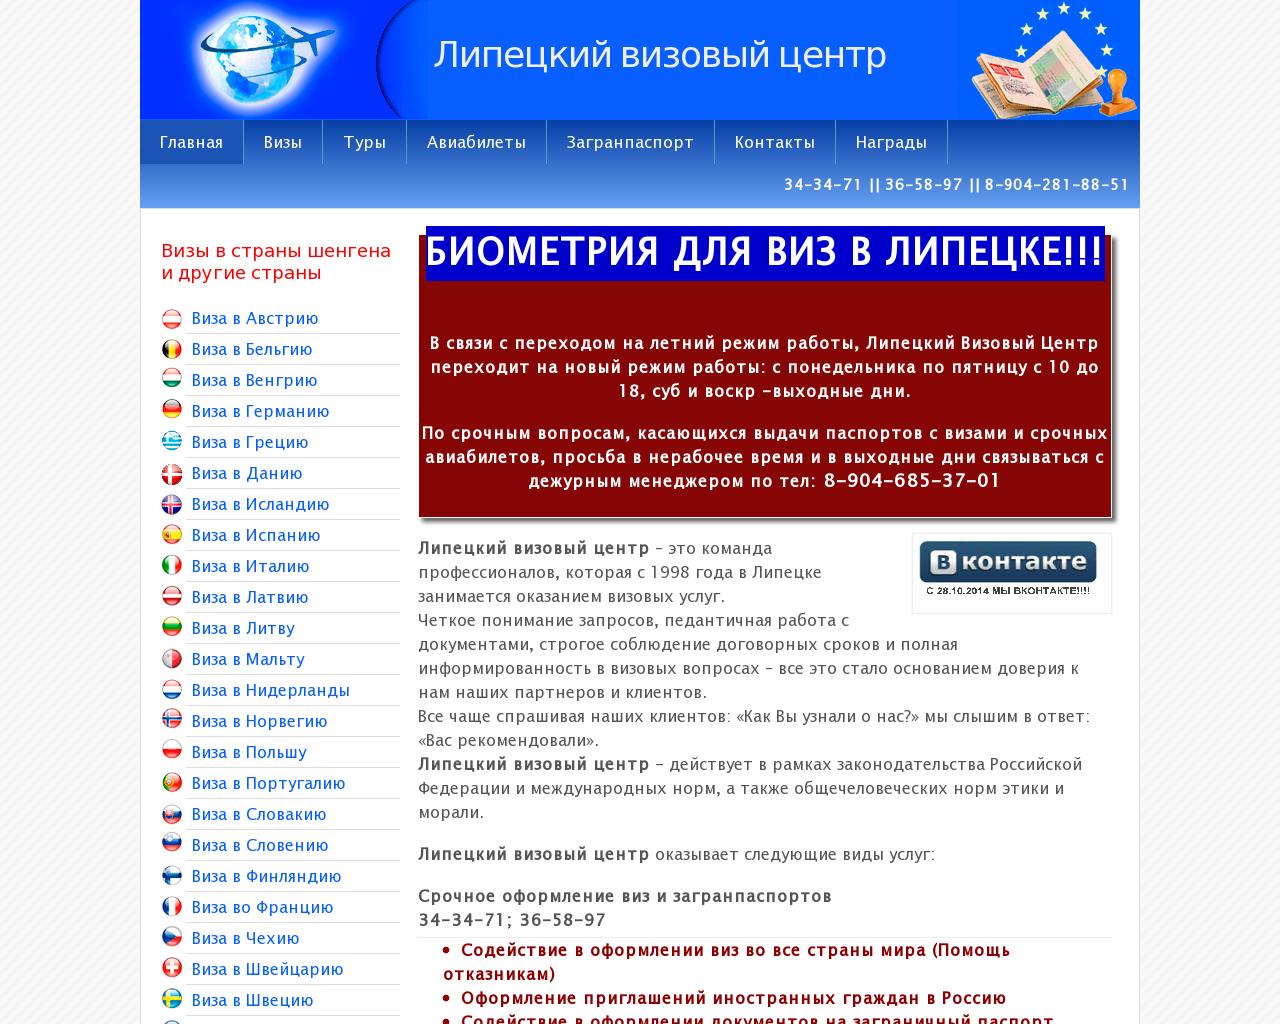 Изображение сайта visa48.ru в разрешении 1280x1024